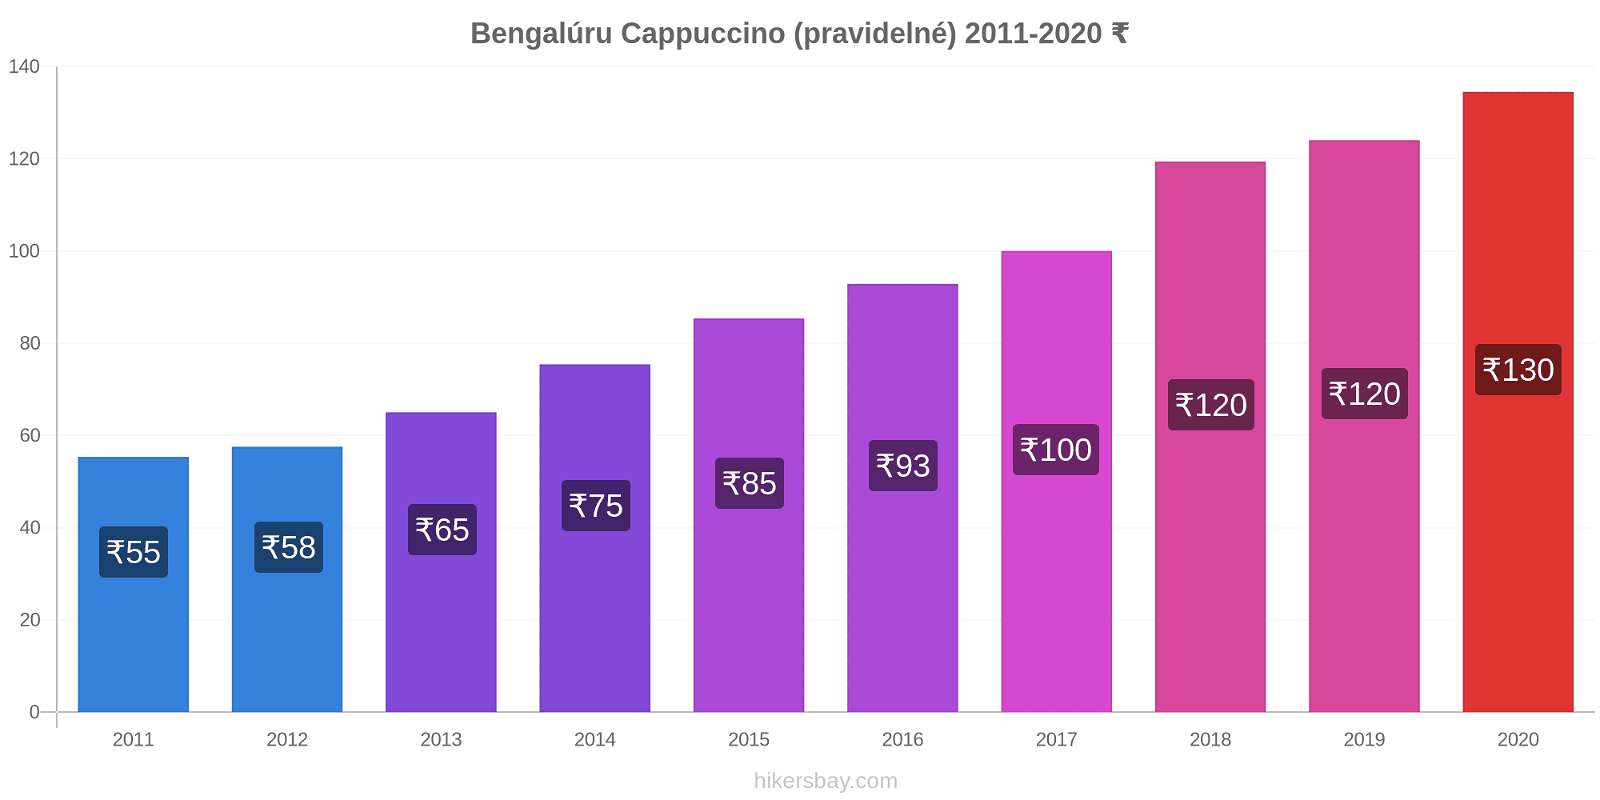 Bengalúru změny cen Cappuccino (pravidelné) hikersbay.com